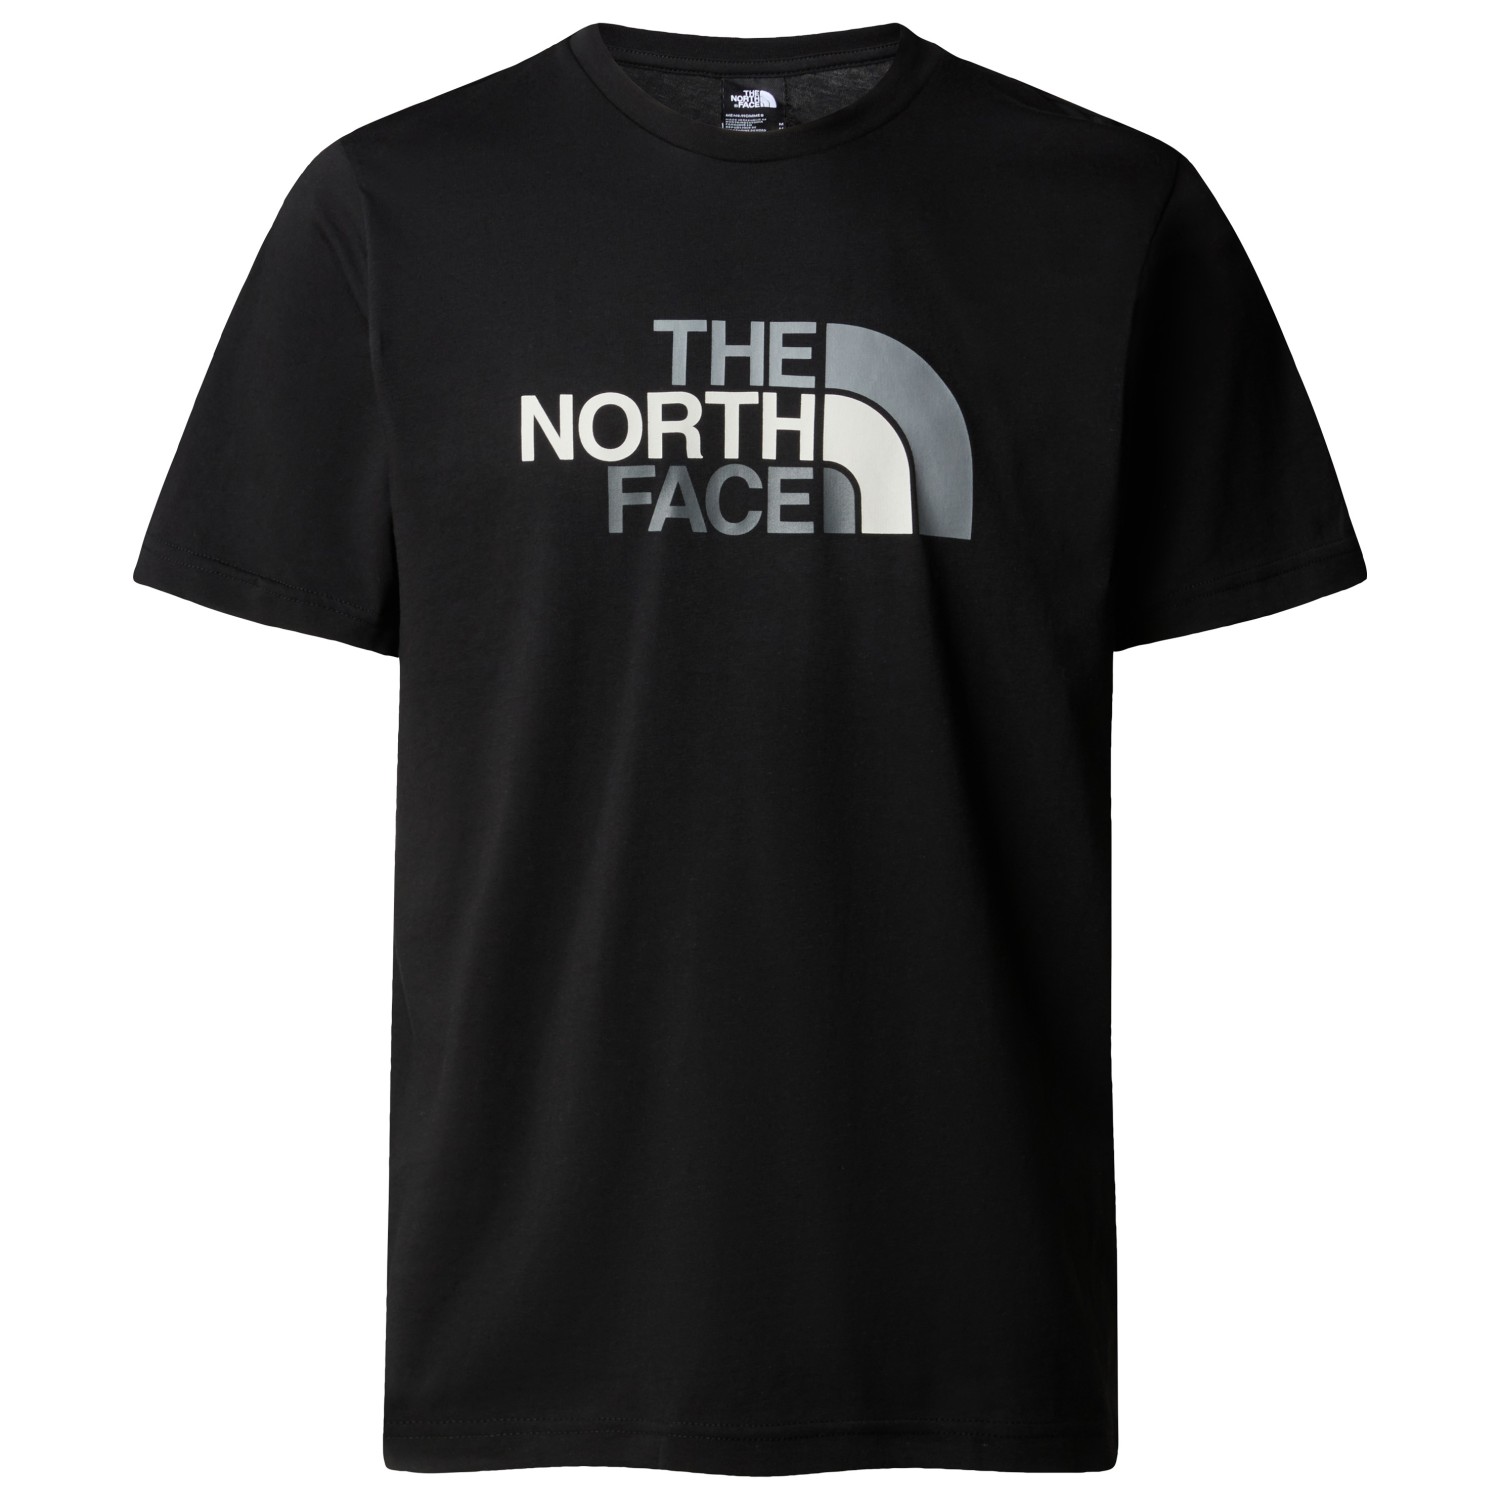 футболка the north face s s mountain line tee цвет tnf black Футболка The North Face S/S Easy Tee, цвет TNF Black